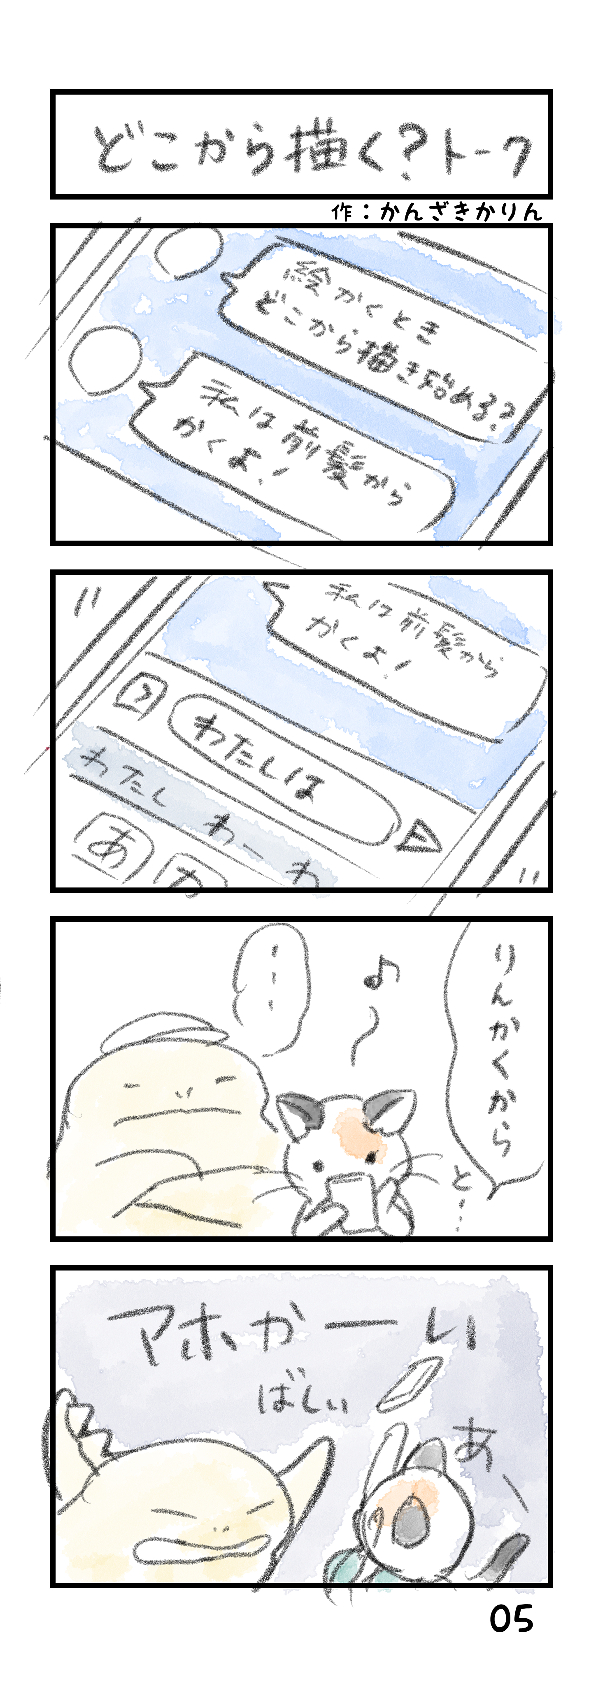 パース解説漫画05